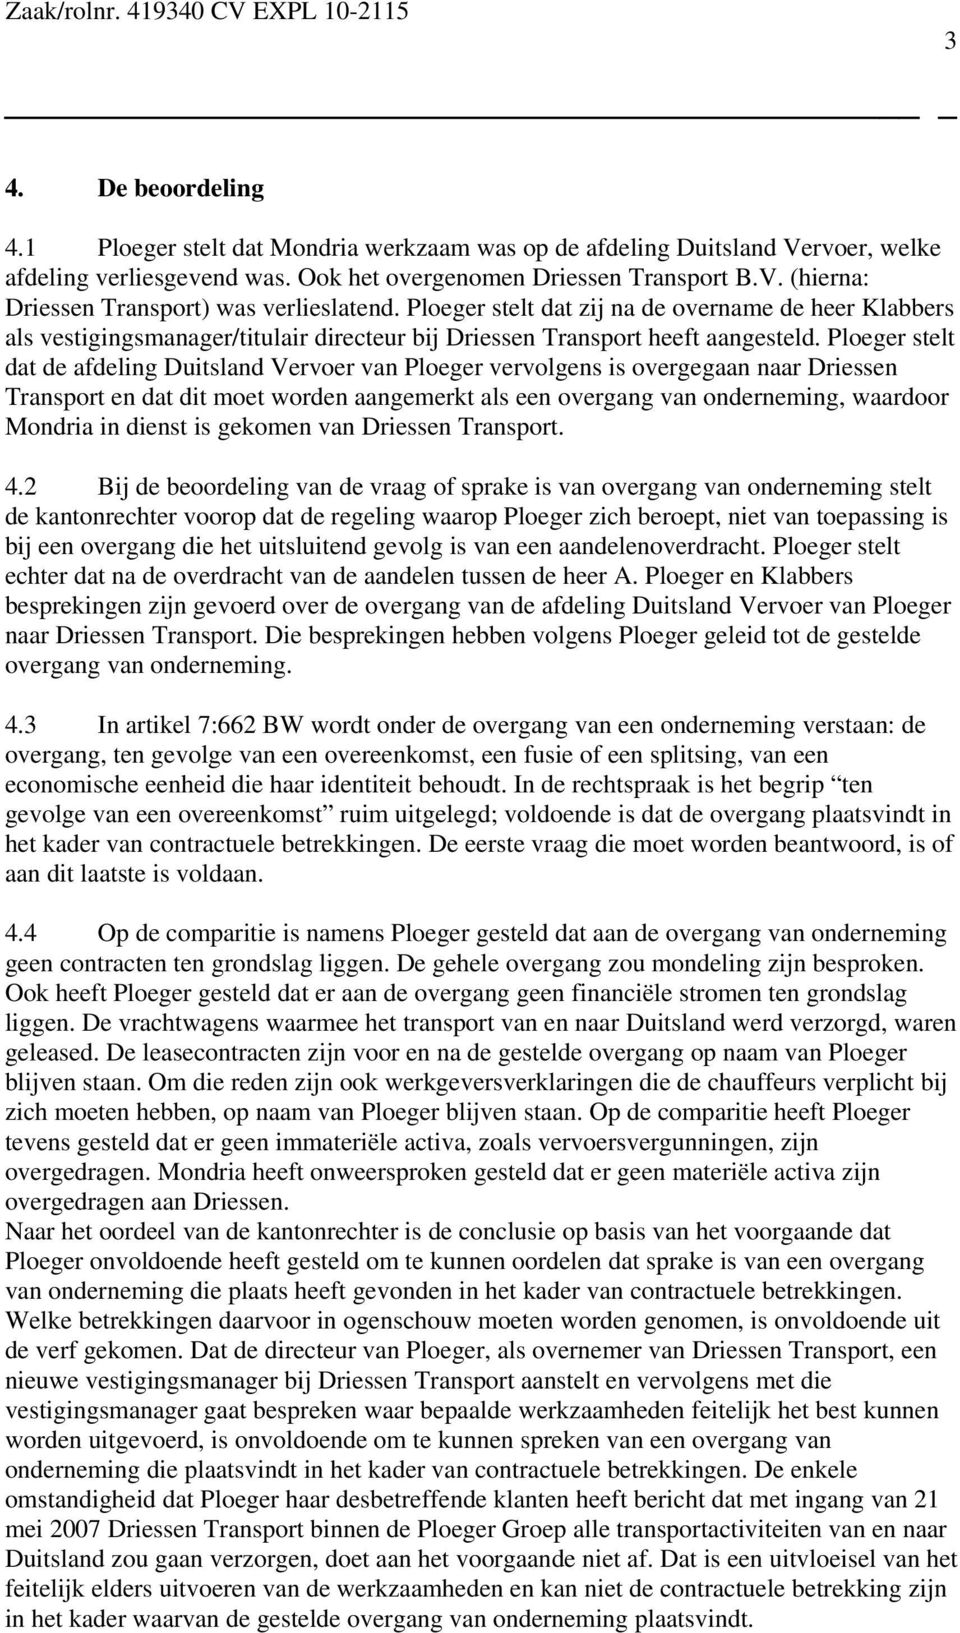 Ploeger stelt dat de afdeling Duitsland Vervoer van Ploeger vervolgens is overgegaan naar Driessen Transport en dat dit moet worden aangemerkt als een overgang van onderneming, waardoor Mondria in